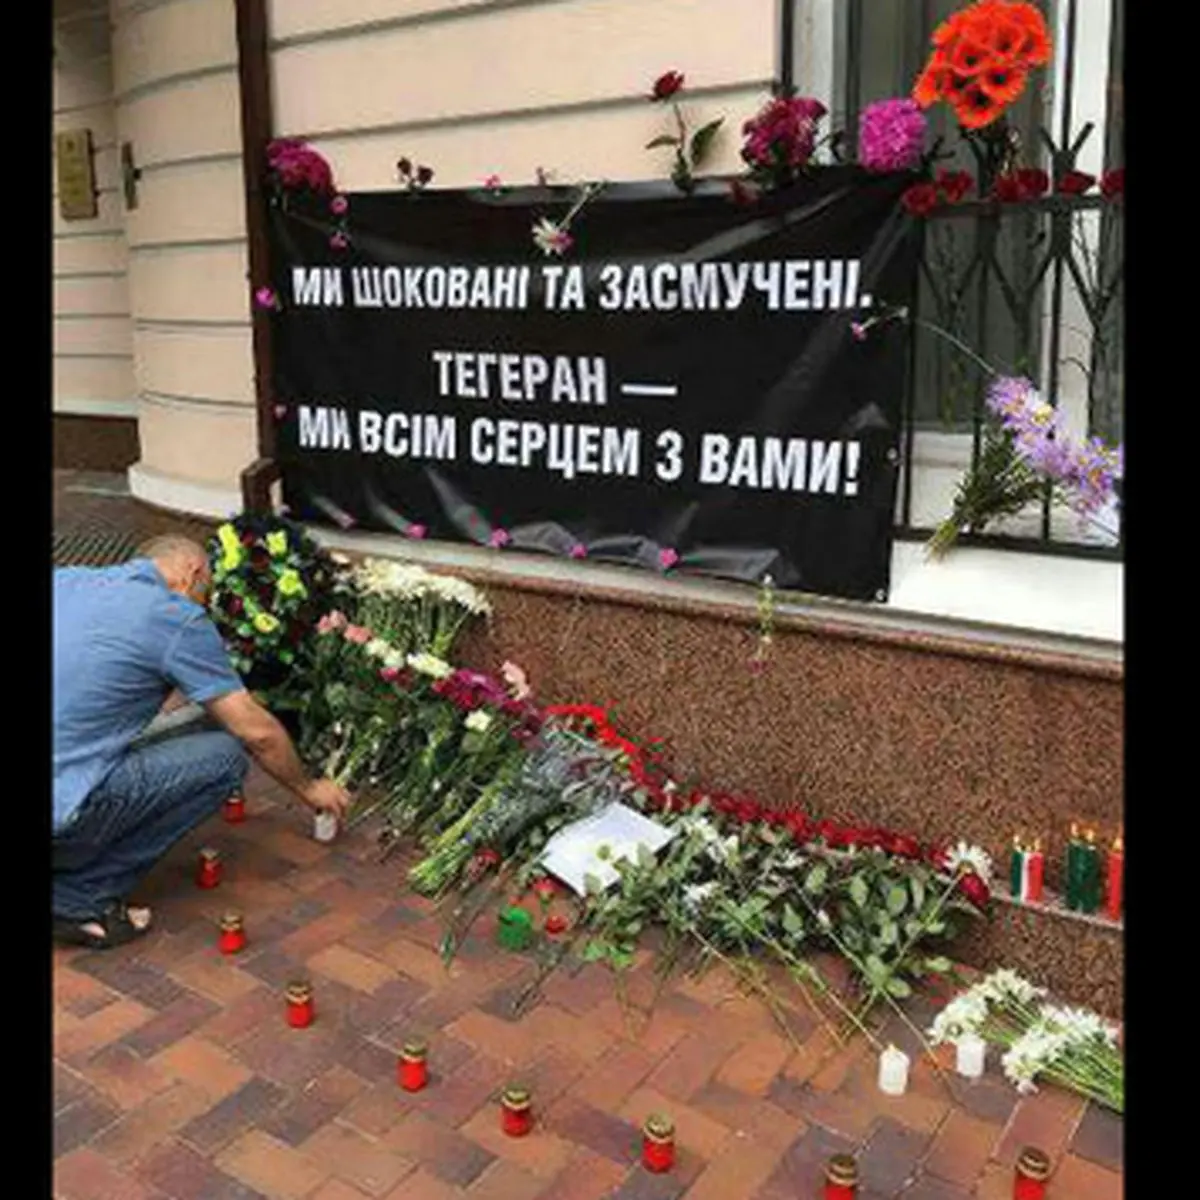 یادبود شهدای حمله تروریستی تهران در اوکراین + عکس 